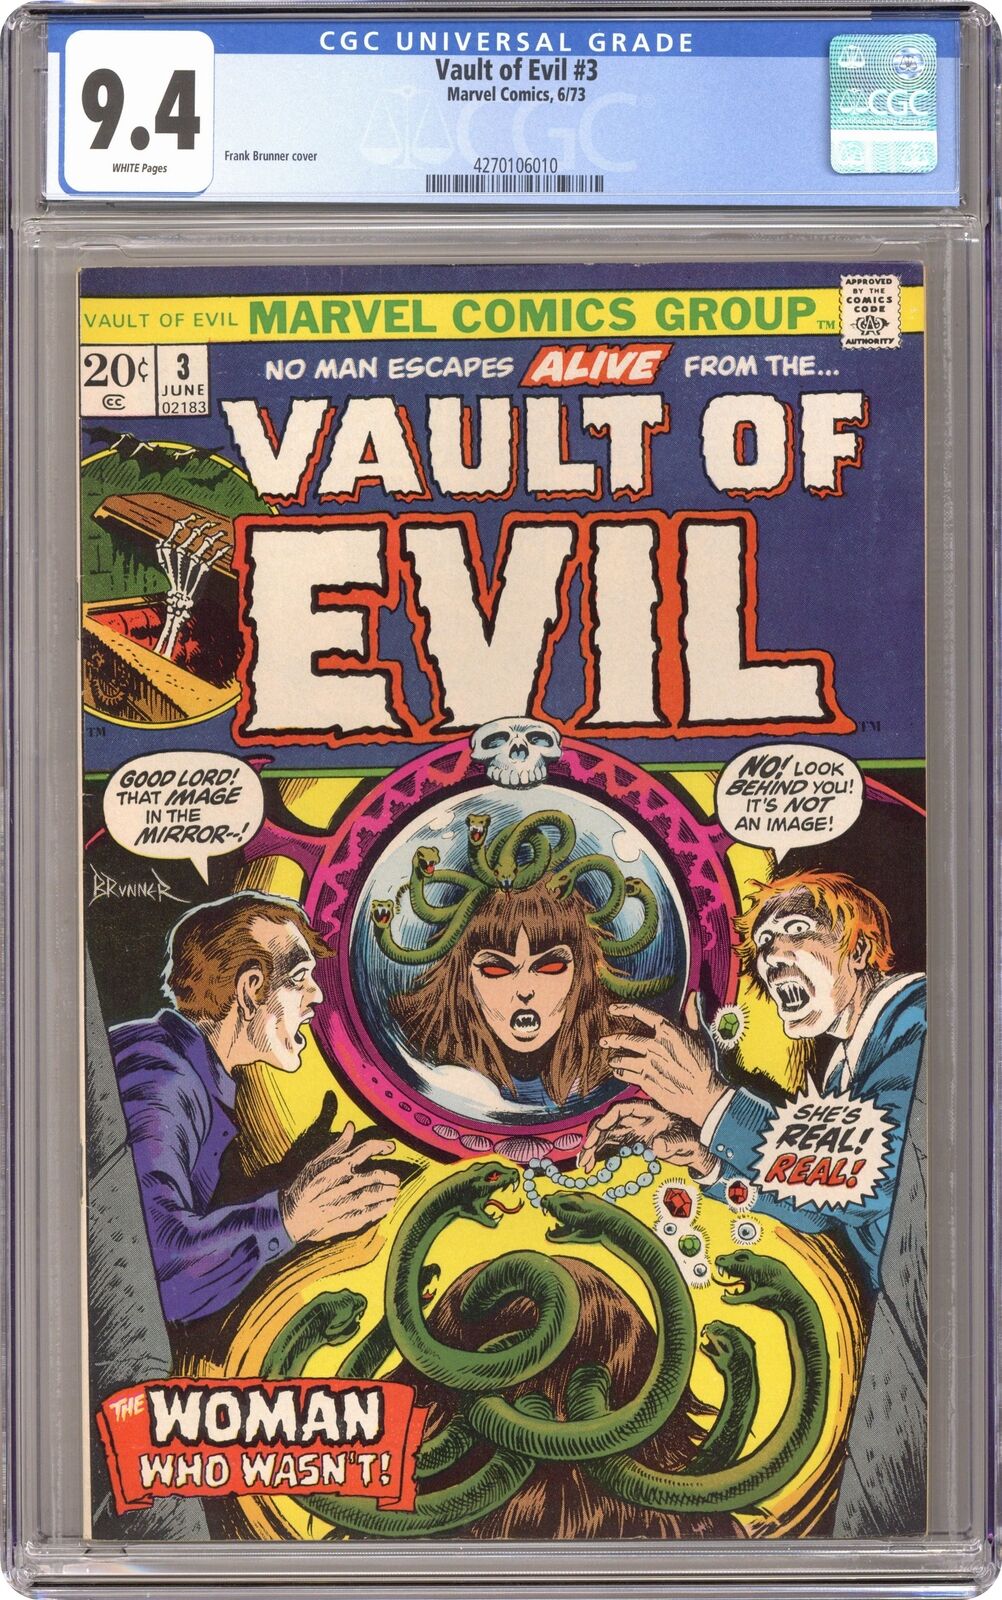 Vault of Evil #3 CGC 9.4 1973 4270106010